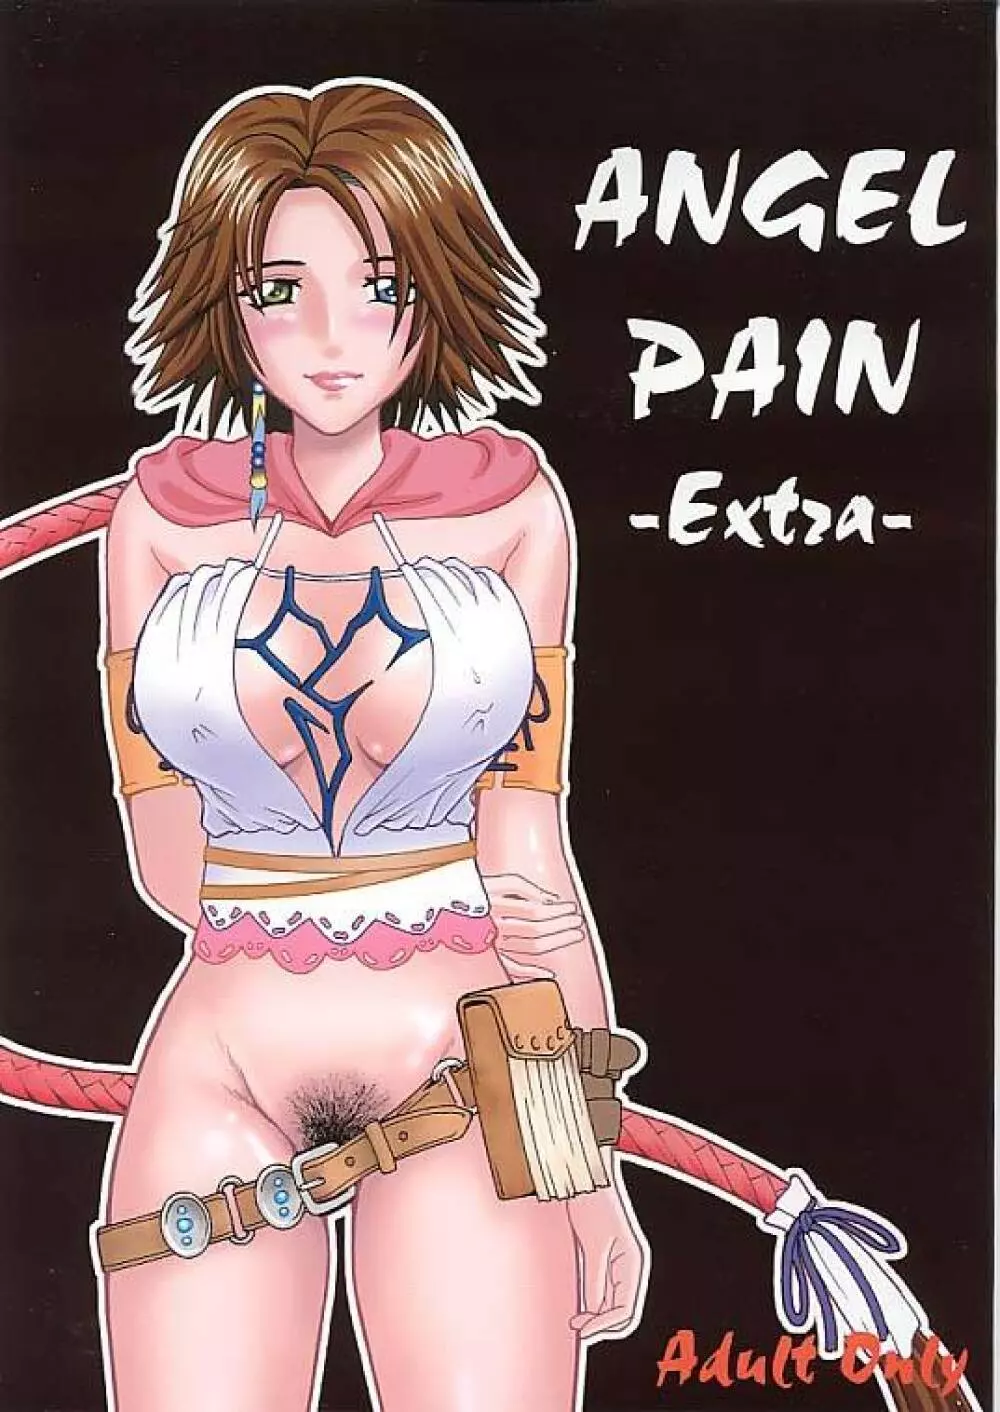 ANGEL PAIN -Extra-